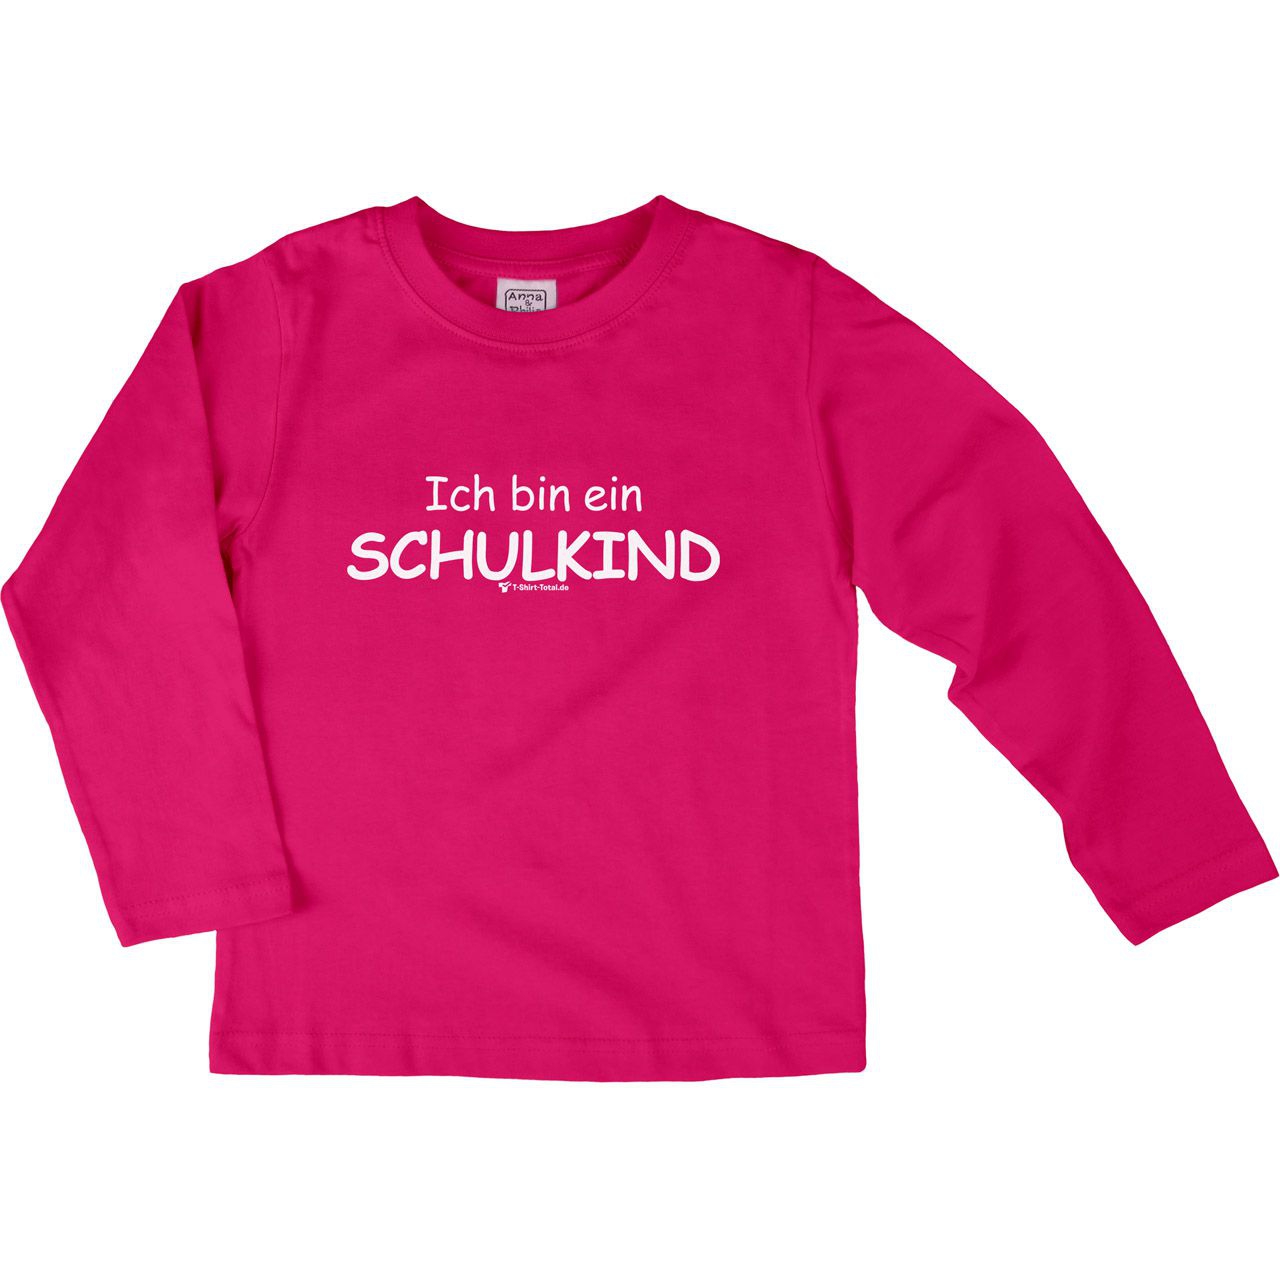 Ich bin ein Schulkind Kinder Langarm Shirt pink 122 / 128